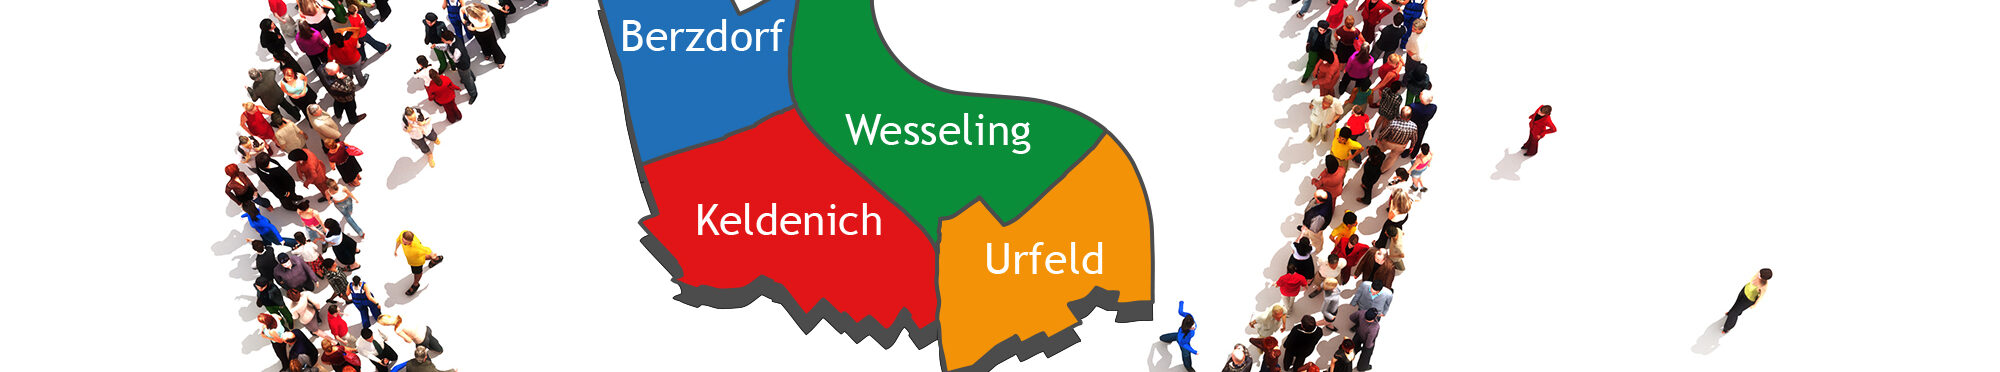 Menschen formen eine Lupe, darin eine Grafik von Wesselings 4 Stadtteilen